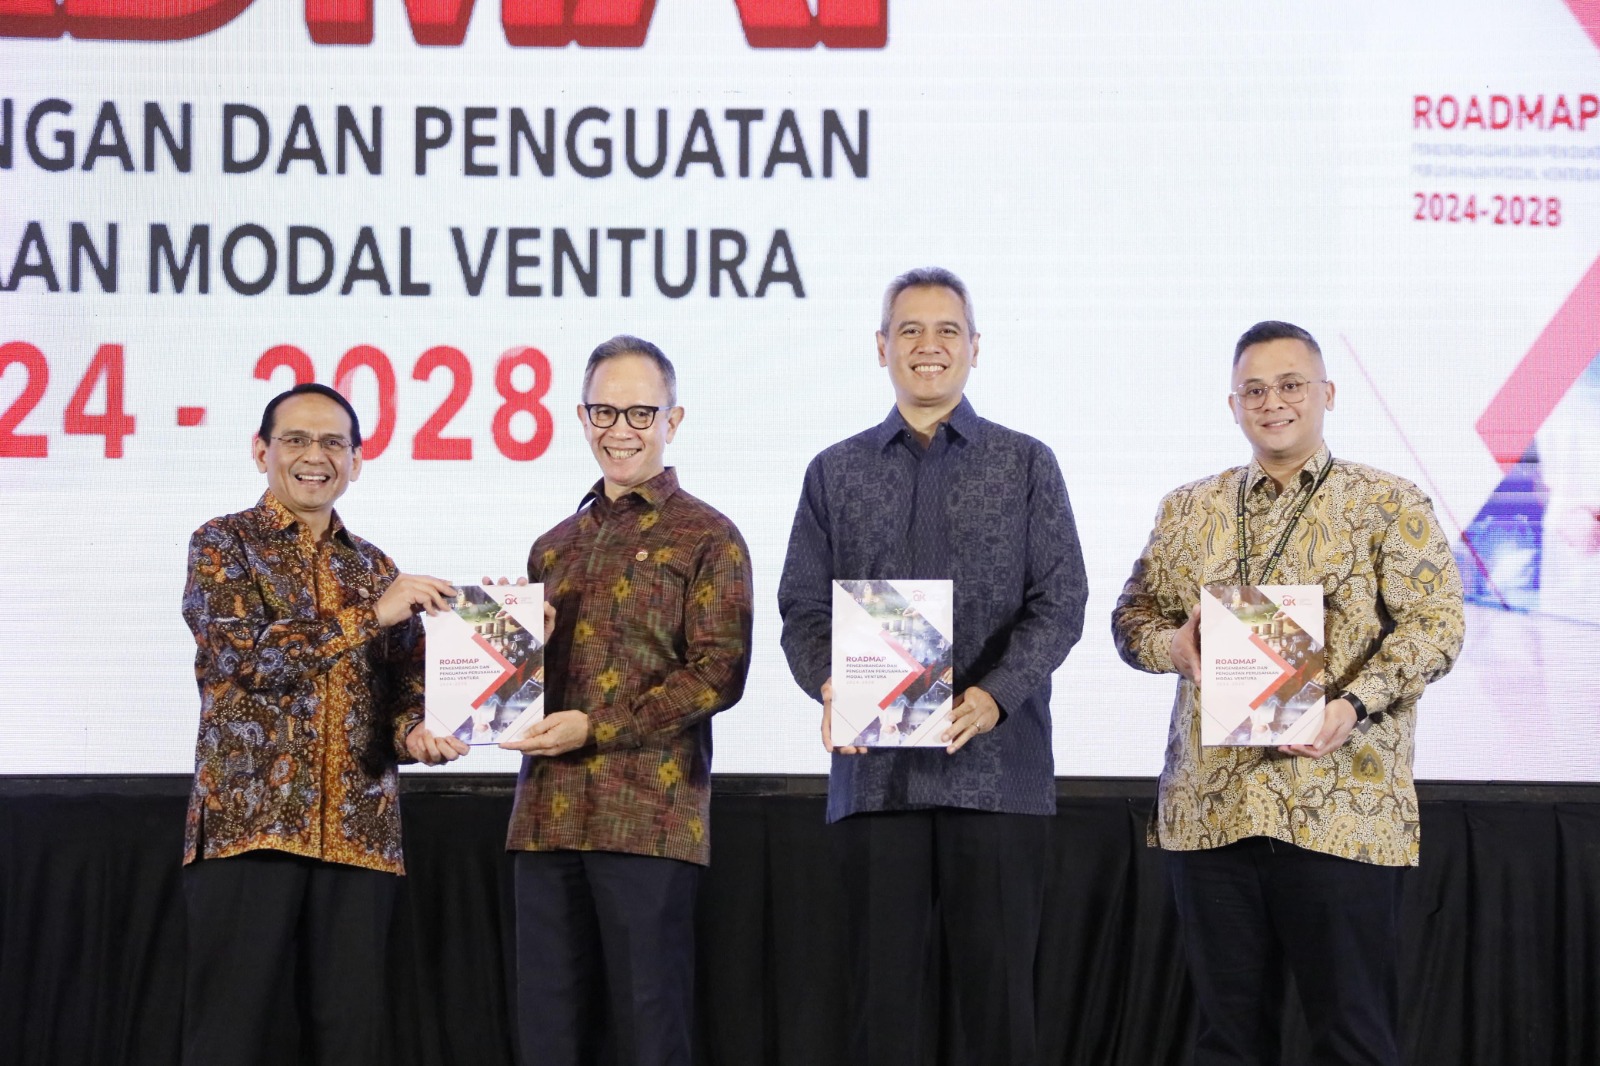 CAPTION: OJK meluncurkan Roadmap Pengembangan dan Penguatan Perusahaan Modal Ventura 2024-2028 di Jakarta, sebagai upaya mewujudkan industri Modal Ventura yang sehat, berintegritas, berorientasi, dan berkontribusi pada pertumbu​han ekonomi nasional. (Dok. Istimewa)